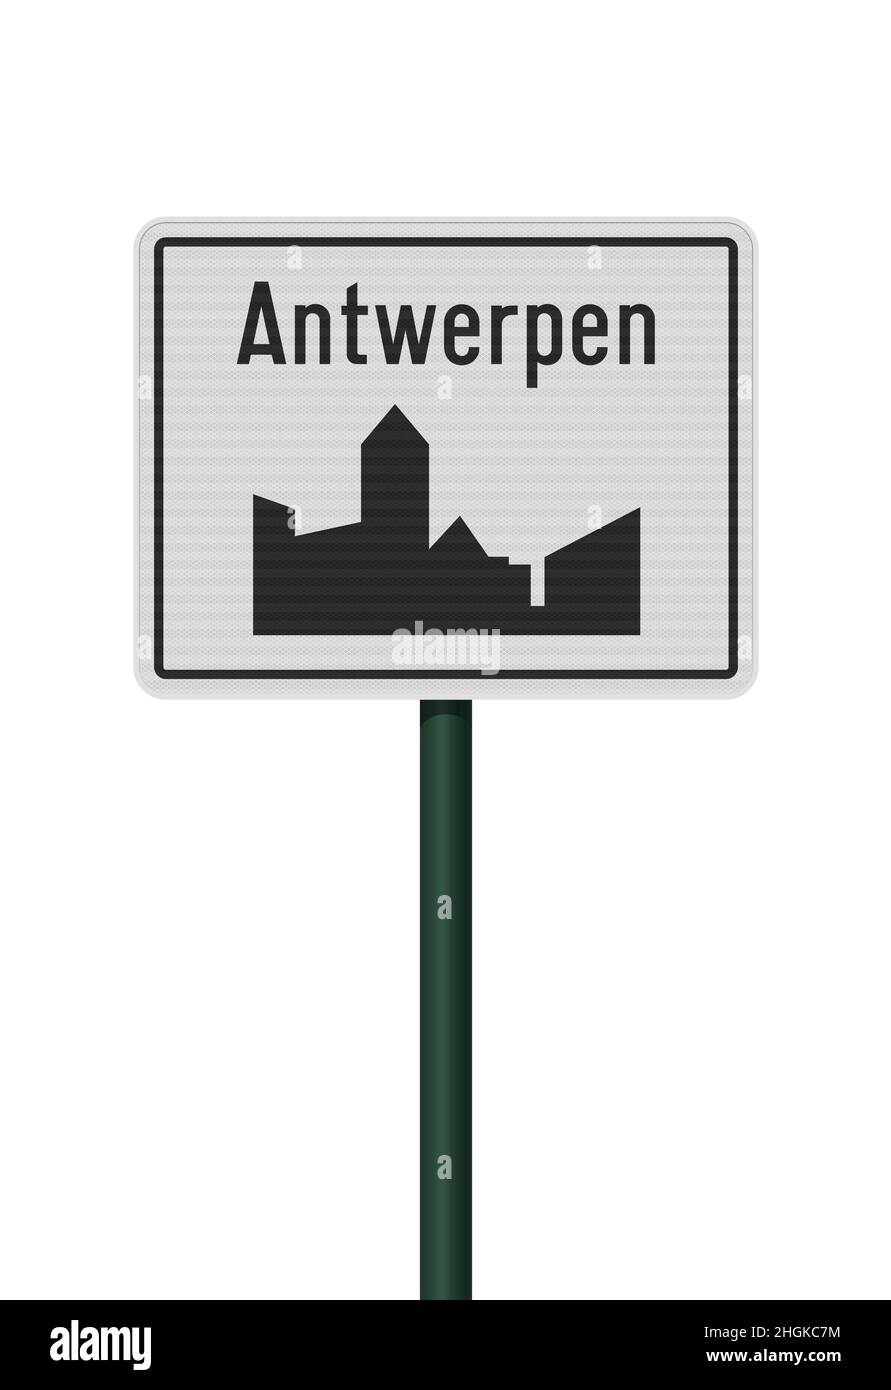 Vektordarstellung der Stadt Antwerpen (Antwerpen auf Niederländisch) weißes Straßenschild auf grünem Metallpfosten Stock Vektor